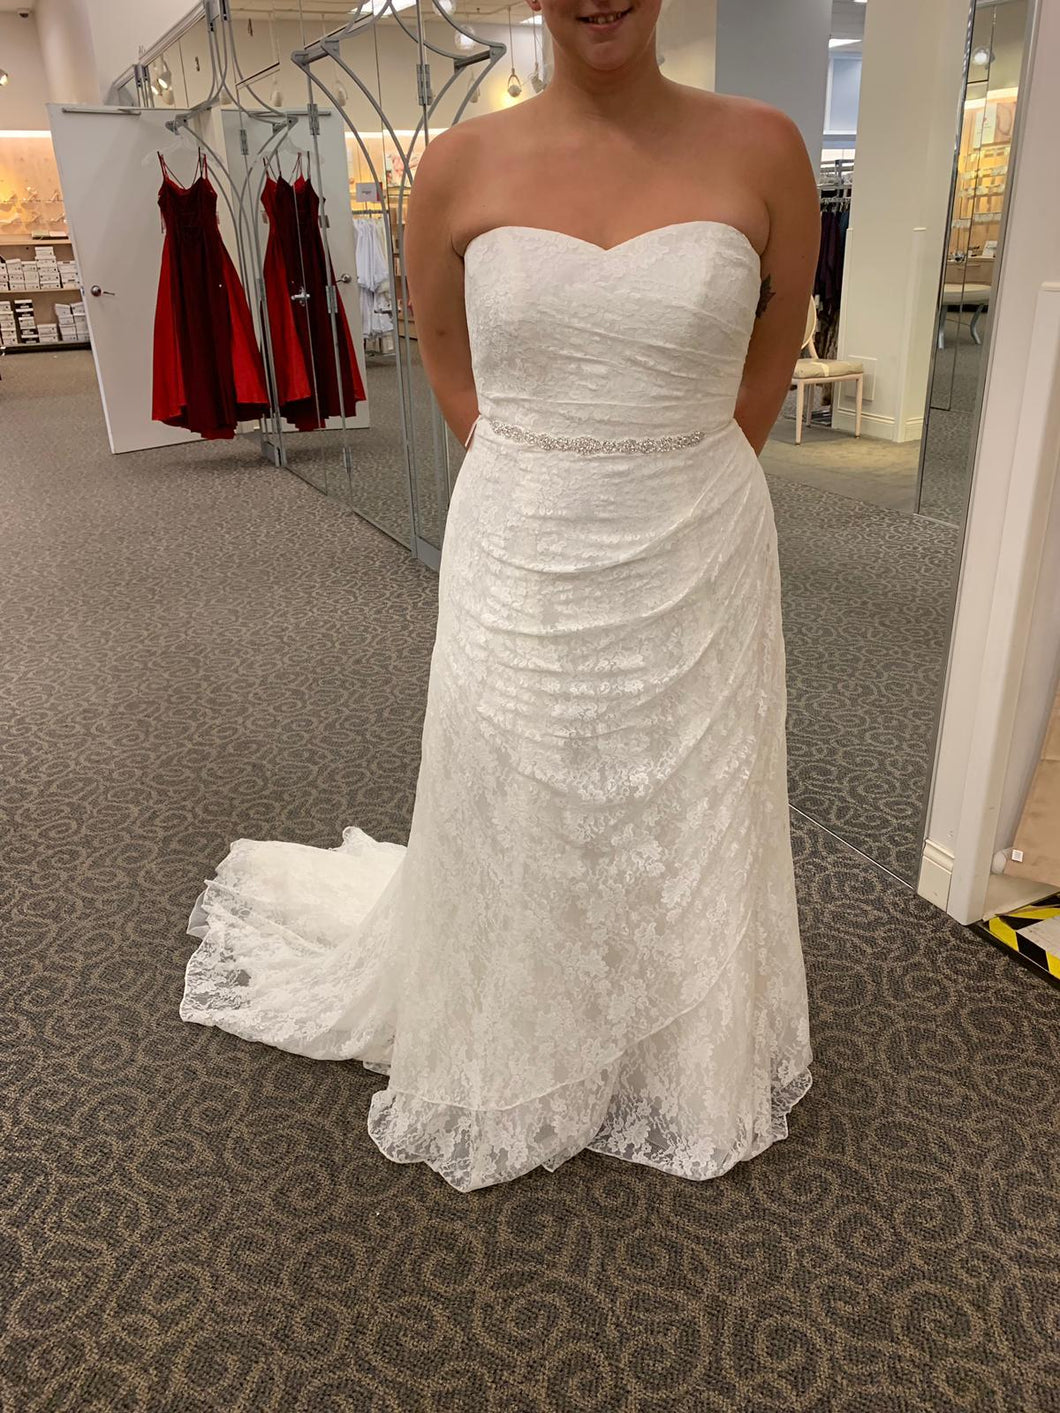 David's Bridal '13030094' wedding dress size-16W NEW